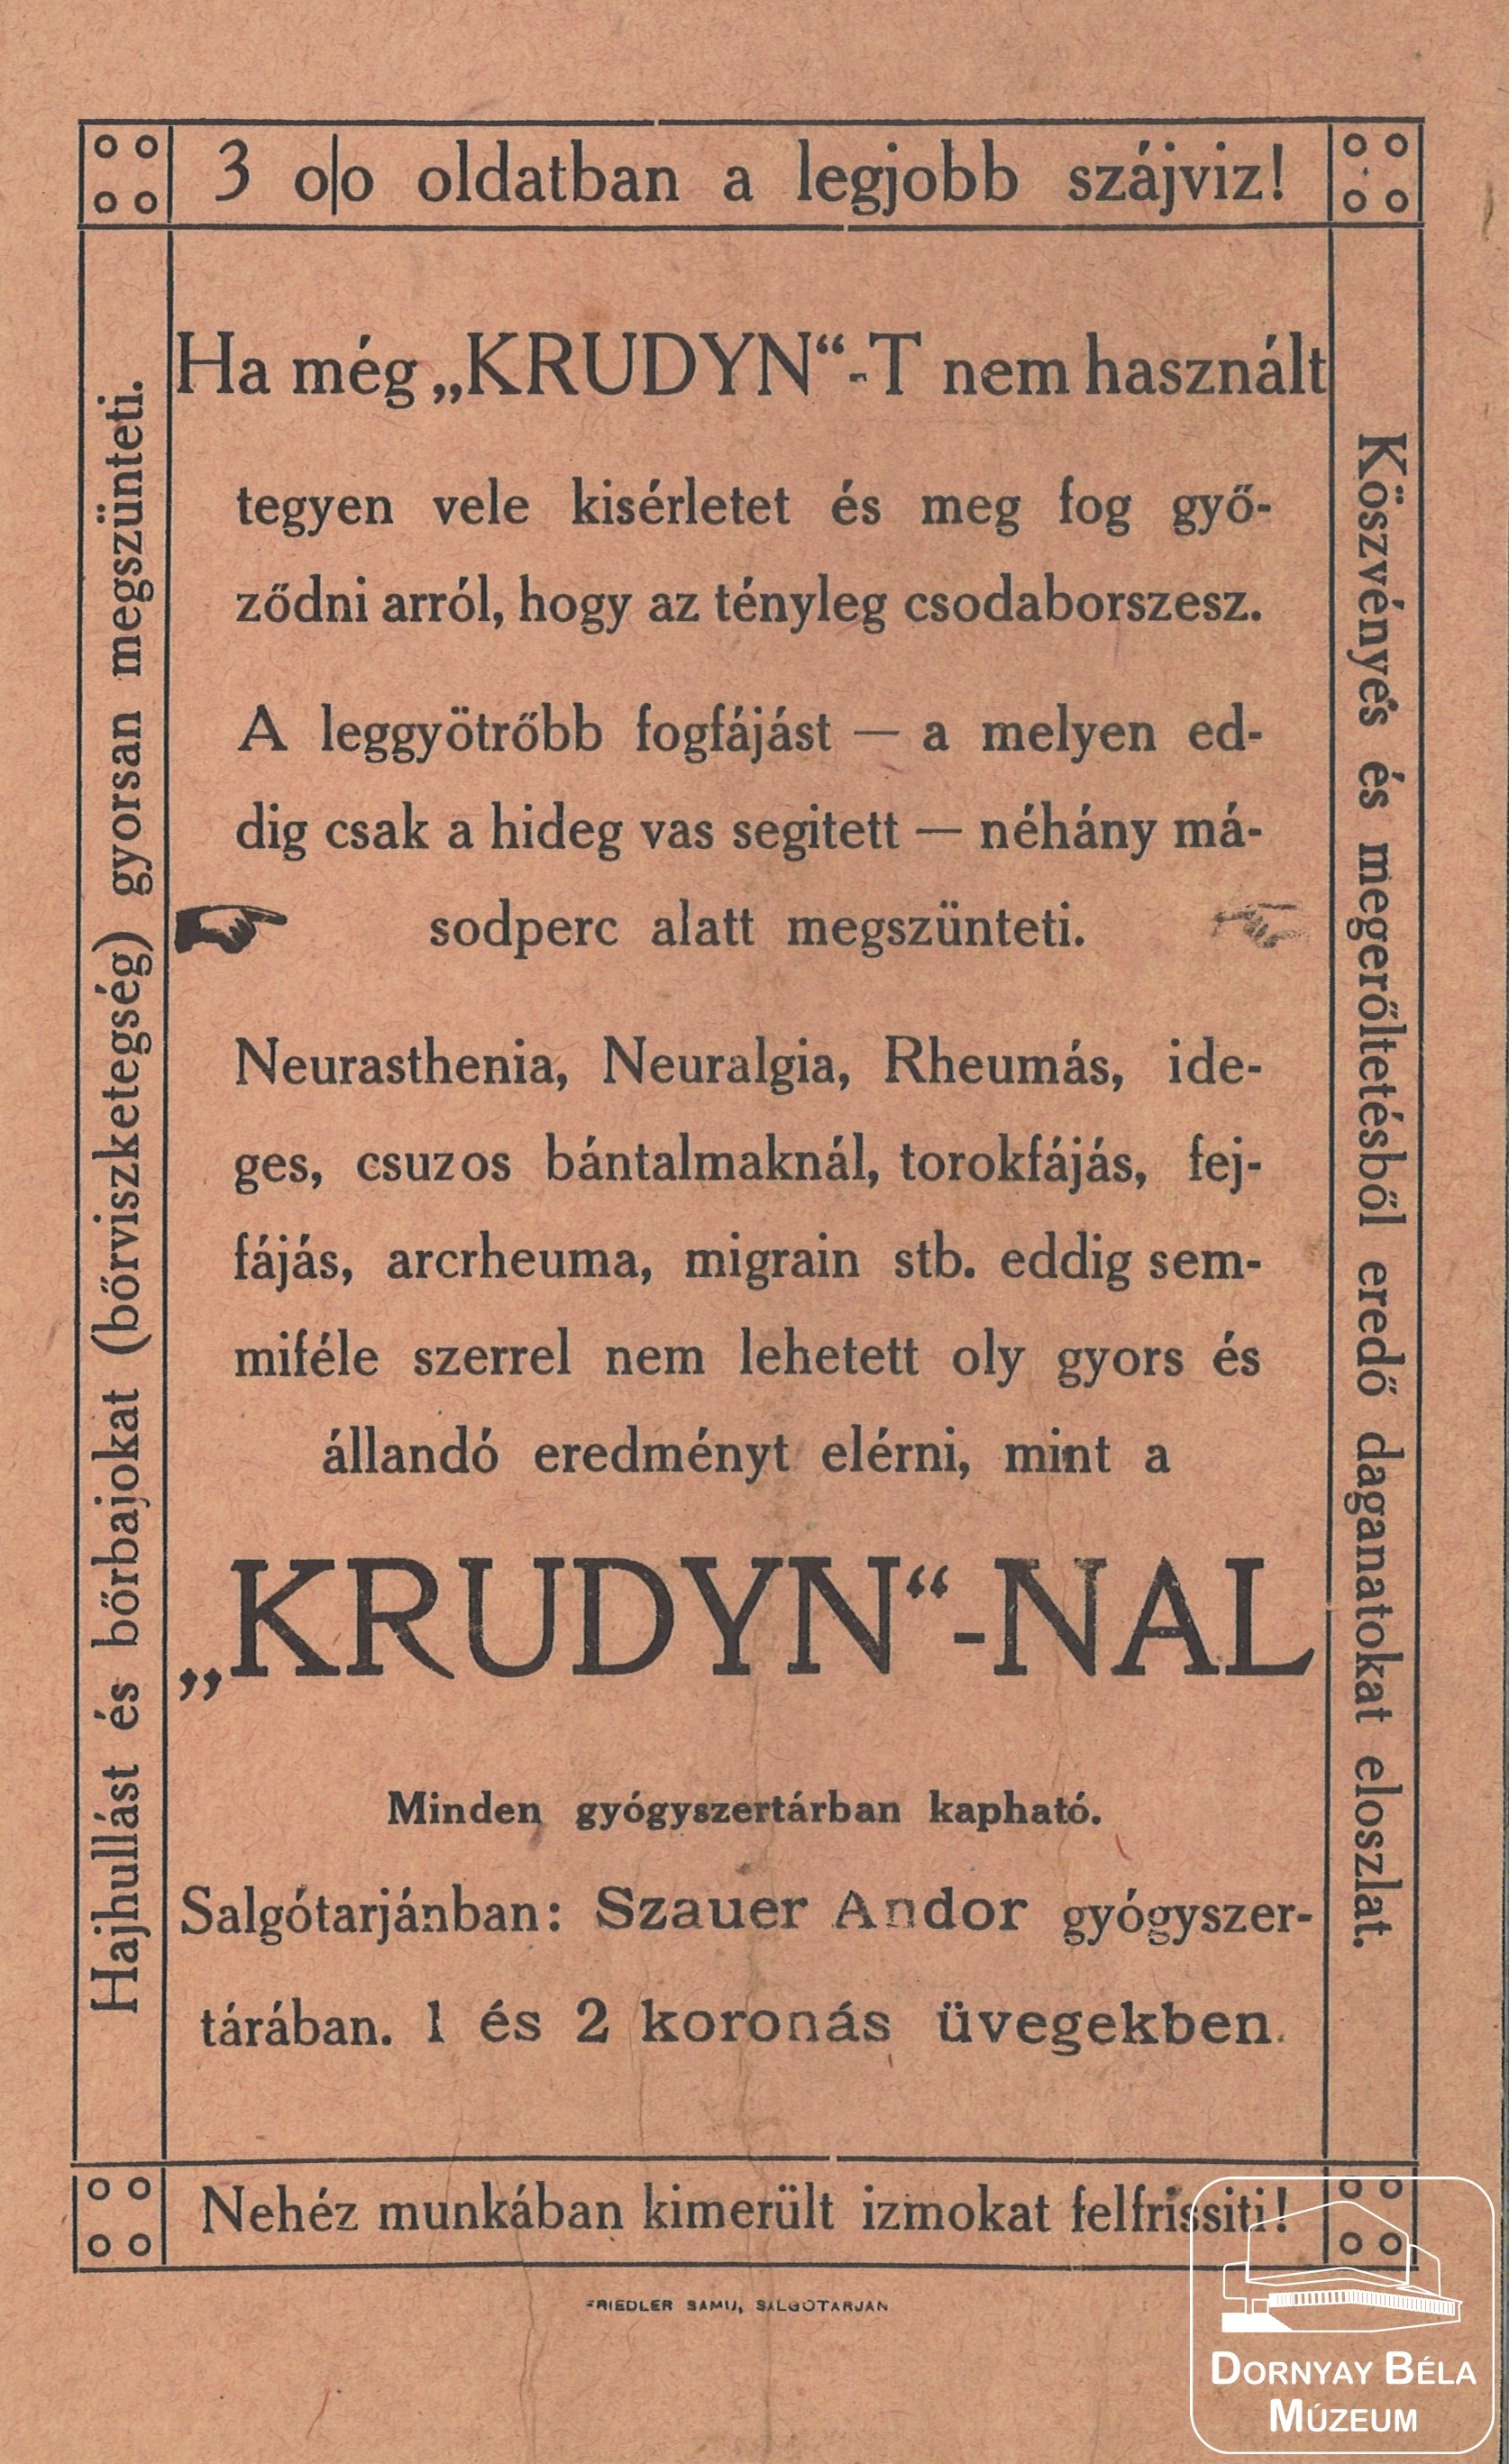 A „krudyn” -féle sósborszeszt reklámozó röplap. (Dornyay Béla Múzeum, Salgótarján CC BY-NC-SA)